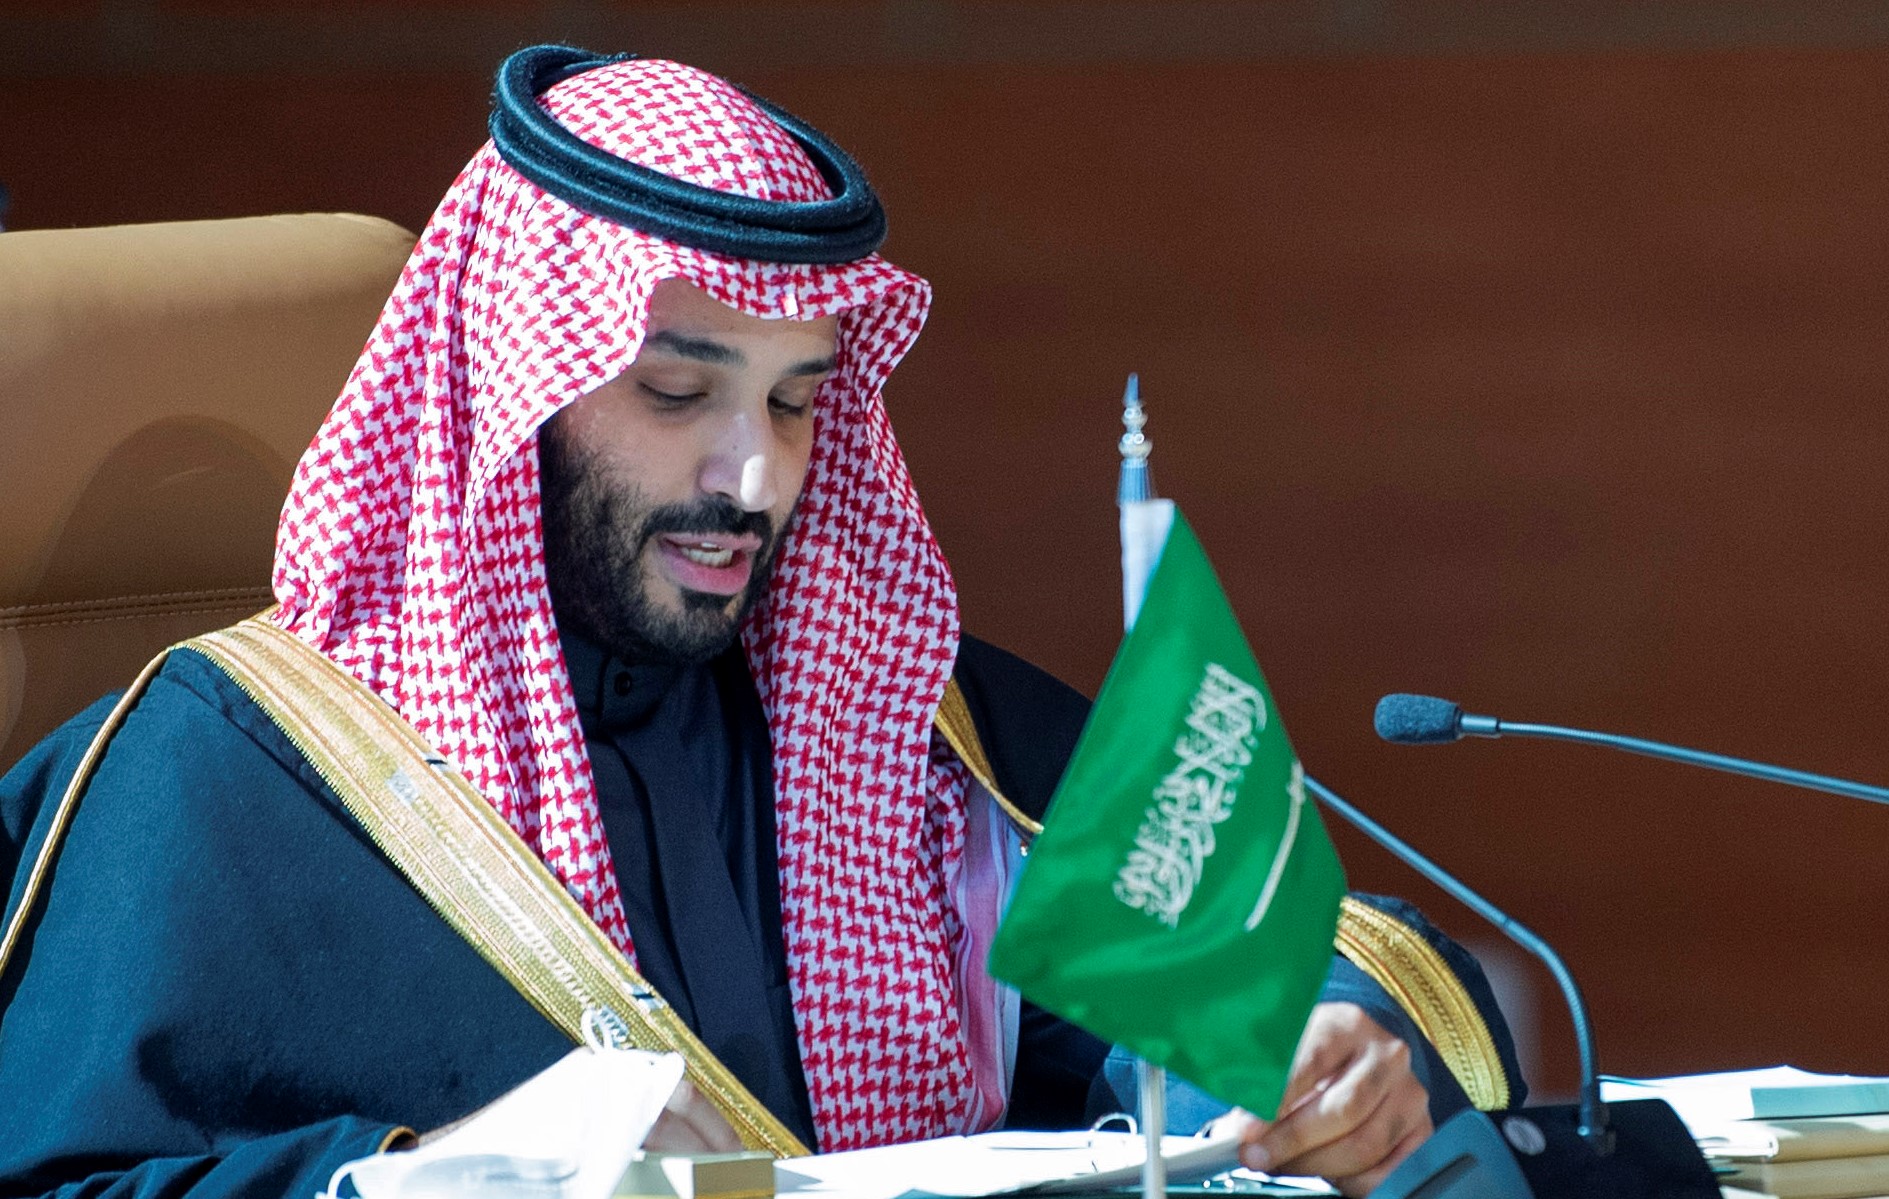 Вариант саудовской аравии. Принц Салман Саудовская Аравия. Мухаммед Бен Аль Сауд. Принц Саудовской Аравии Мухаммед. Наследный принц Мухаммед Бин Салман.